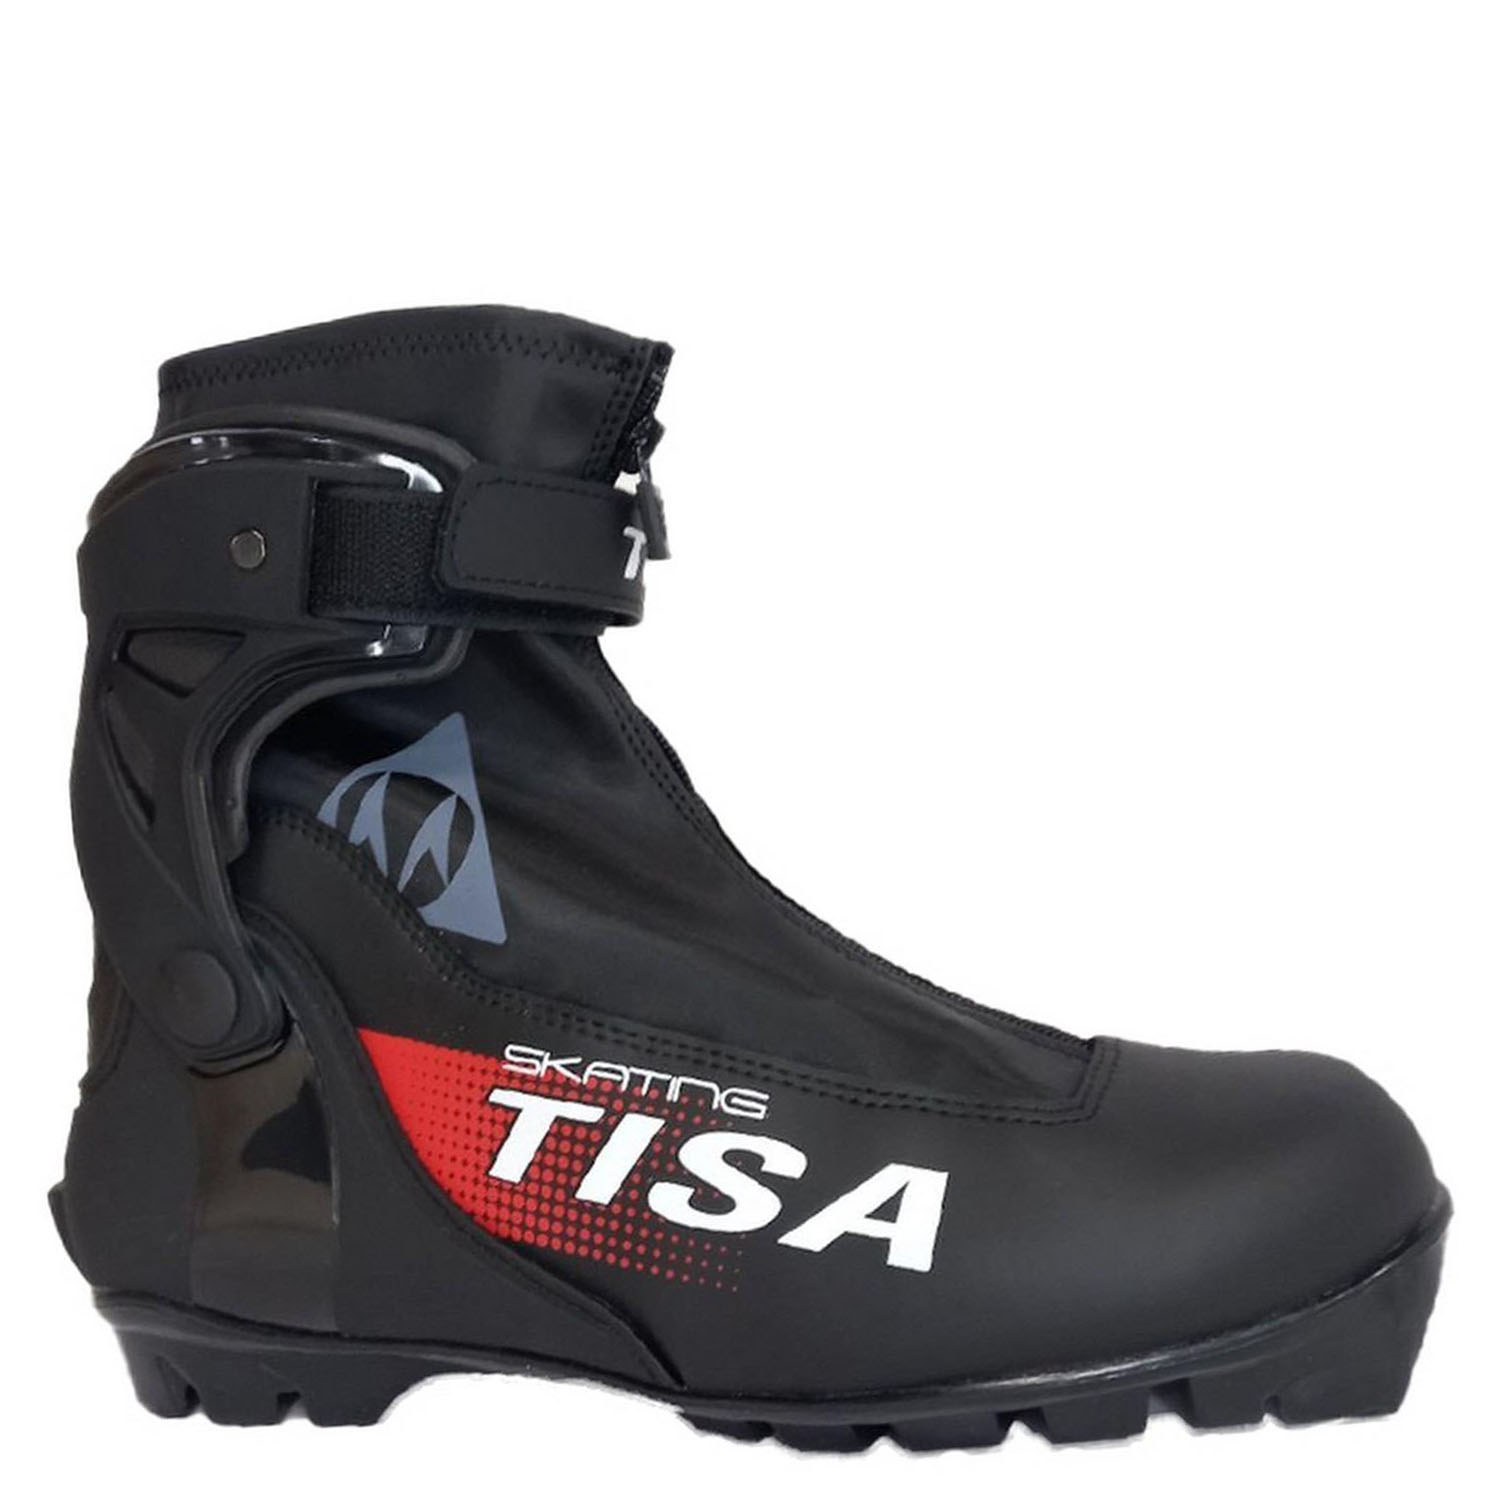 Ботинки NNN Tisa Skate 44р. (стелька 28см.) черный-красный